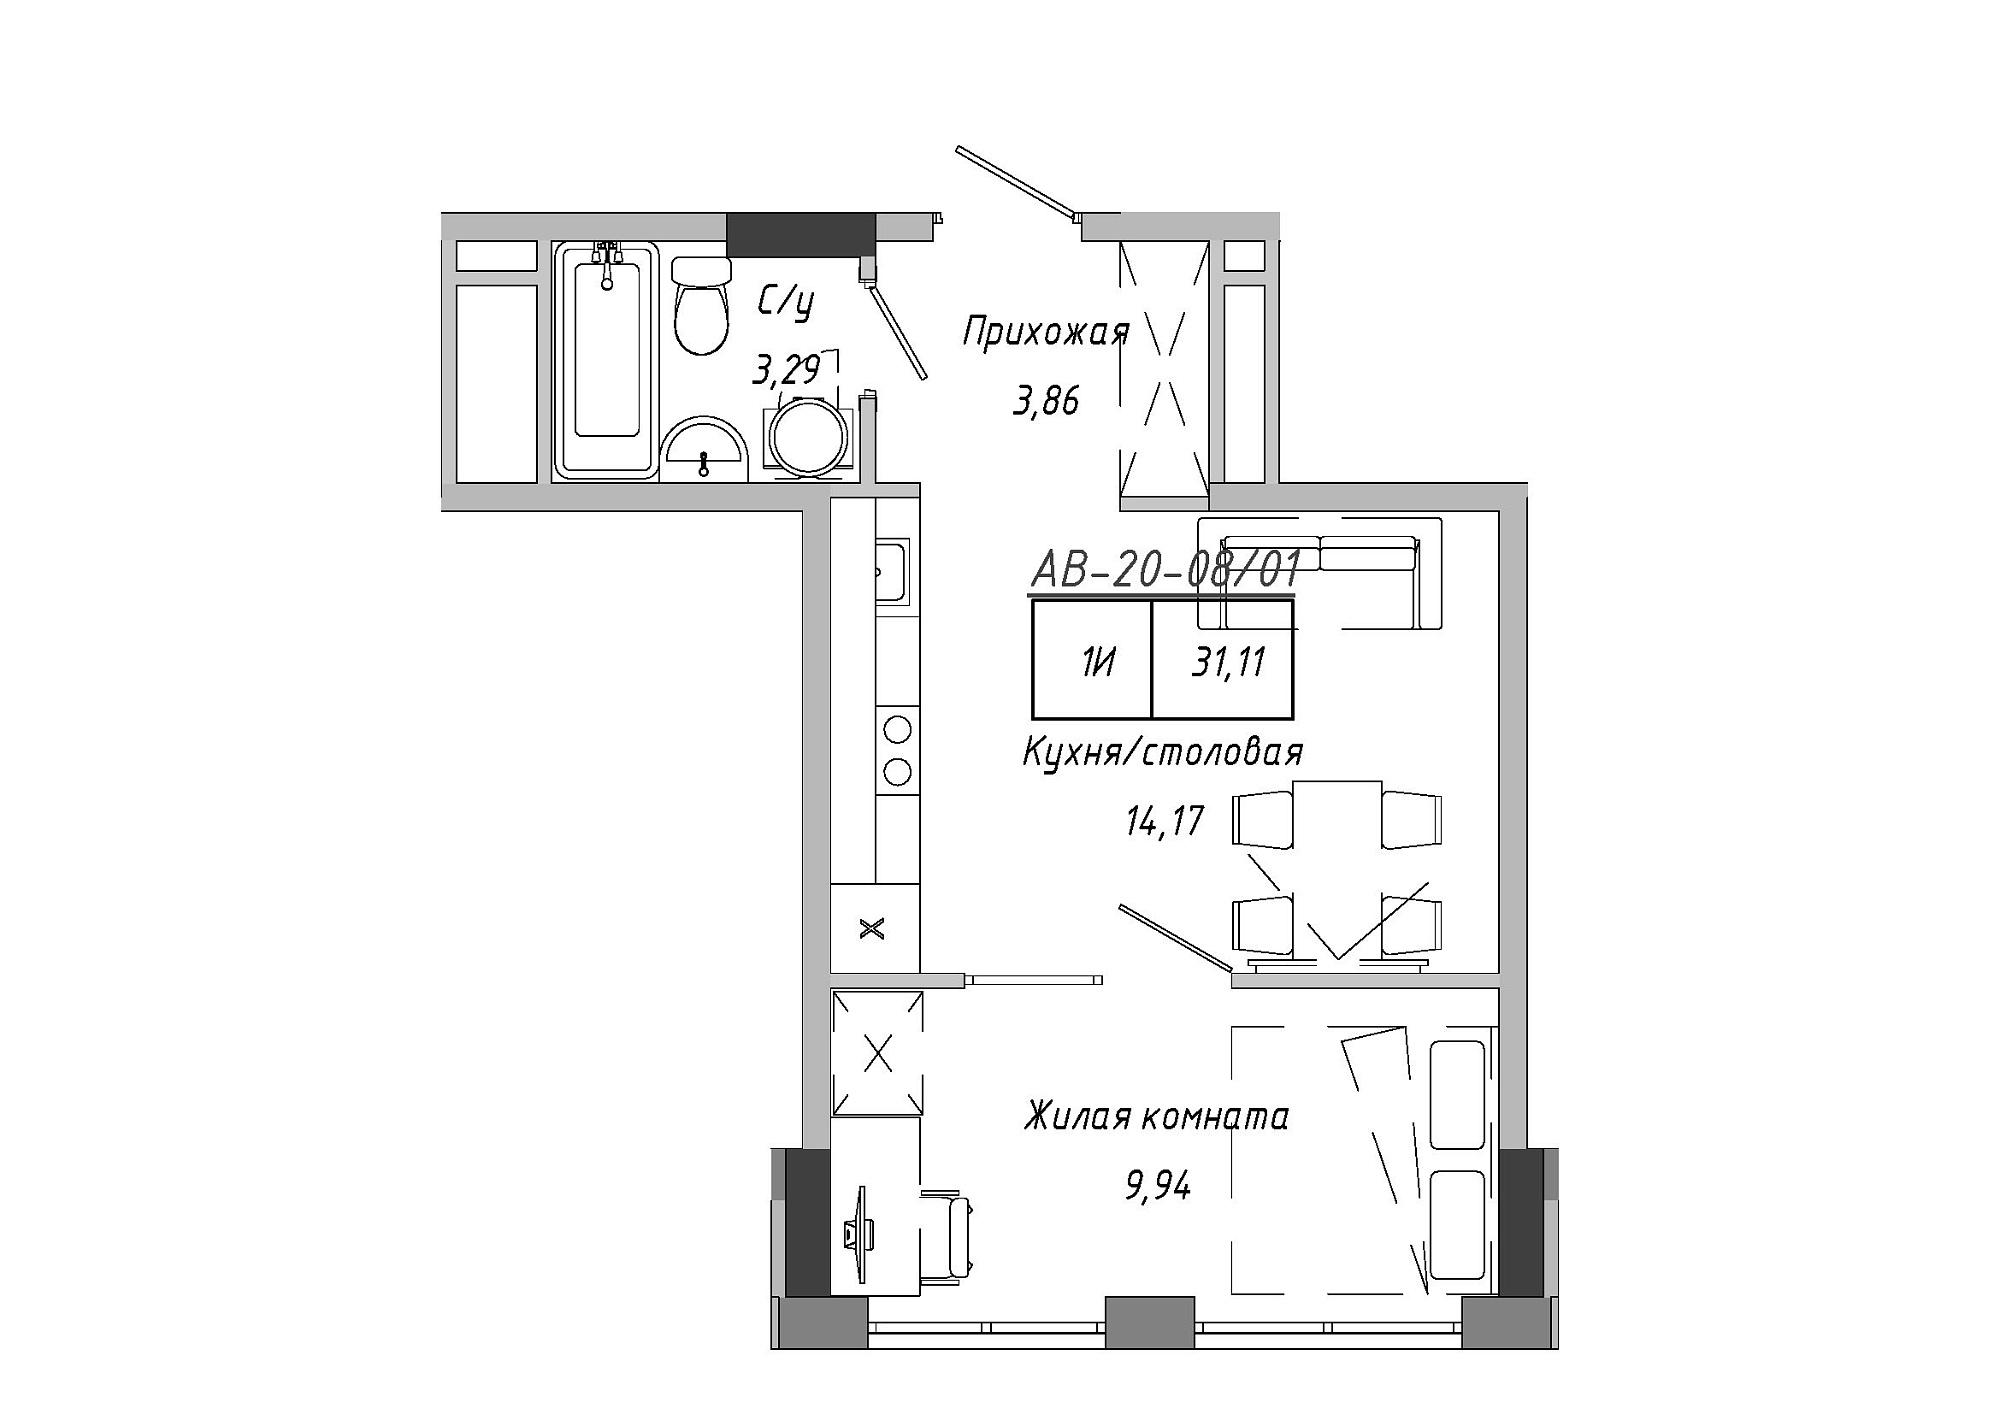 Планировка 1-к квартира площей 30.28м2, AB-20-08/00001.